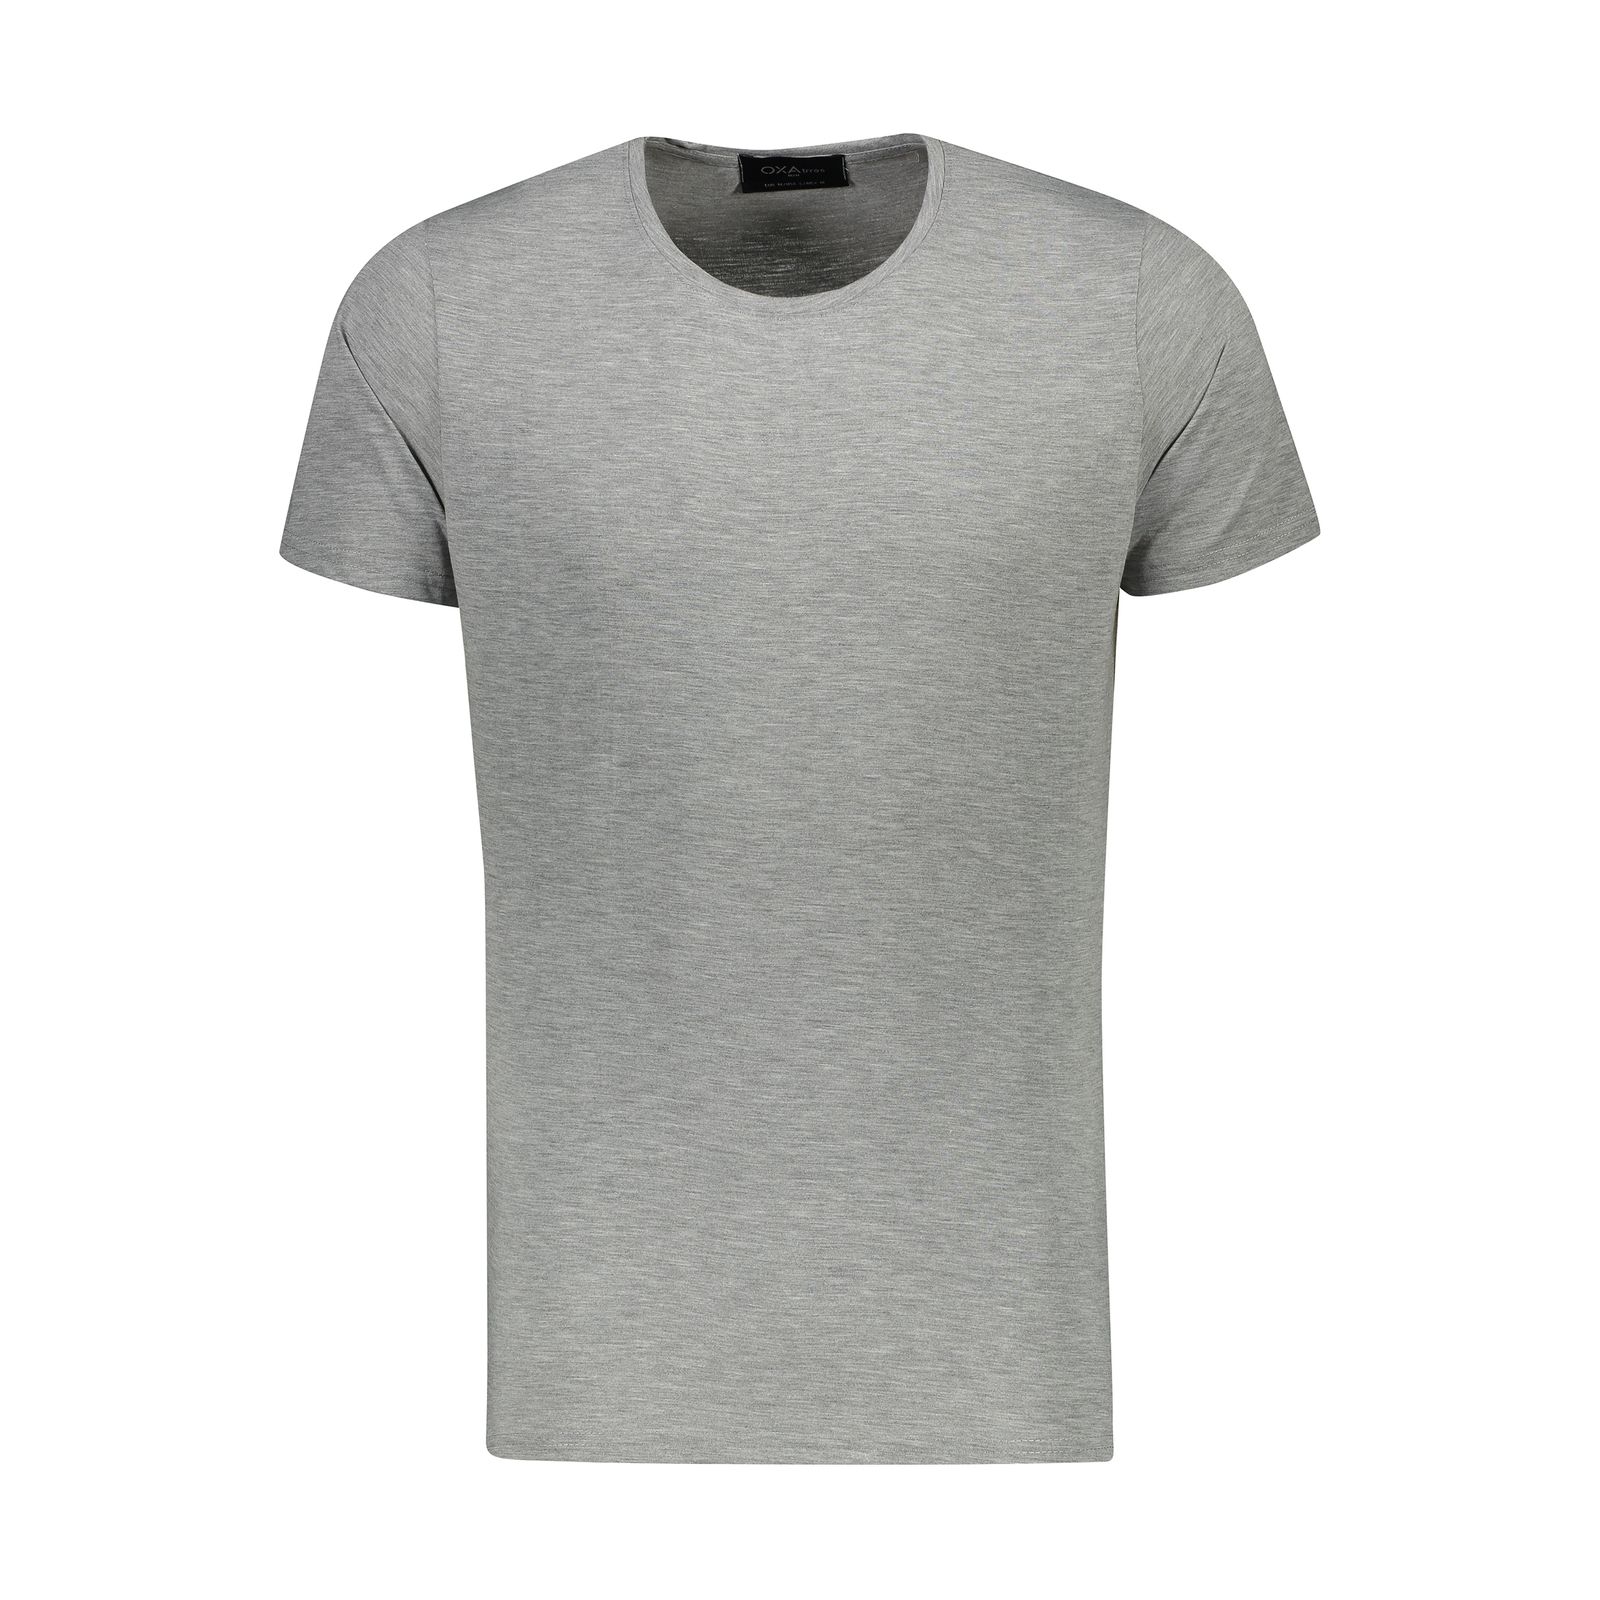 تی شرت آستین کوتاه مردانه اکزاترس مدل P032001112370100-112 -  - 1